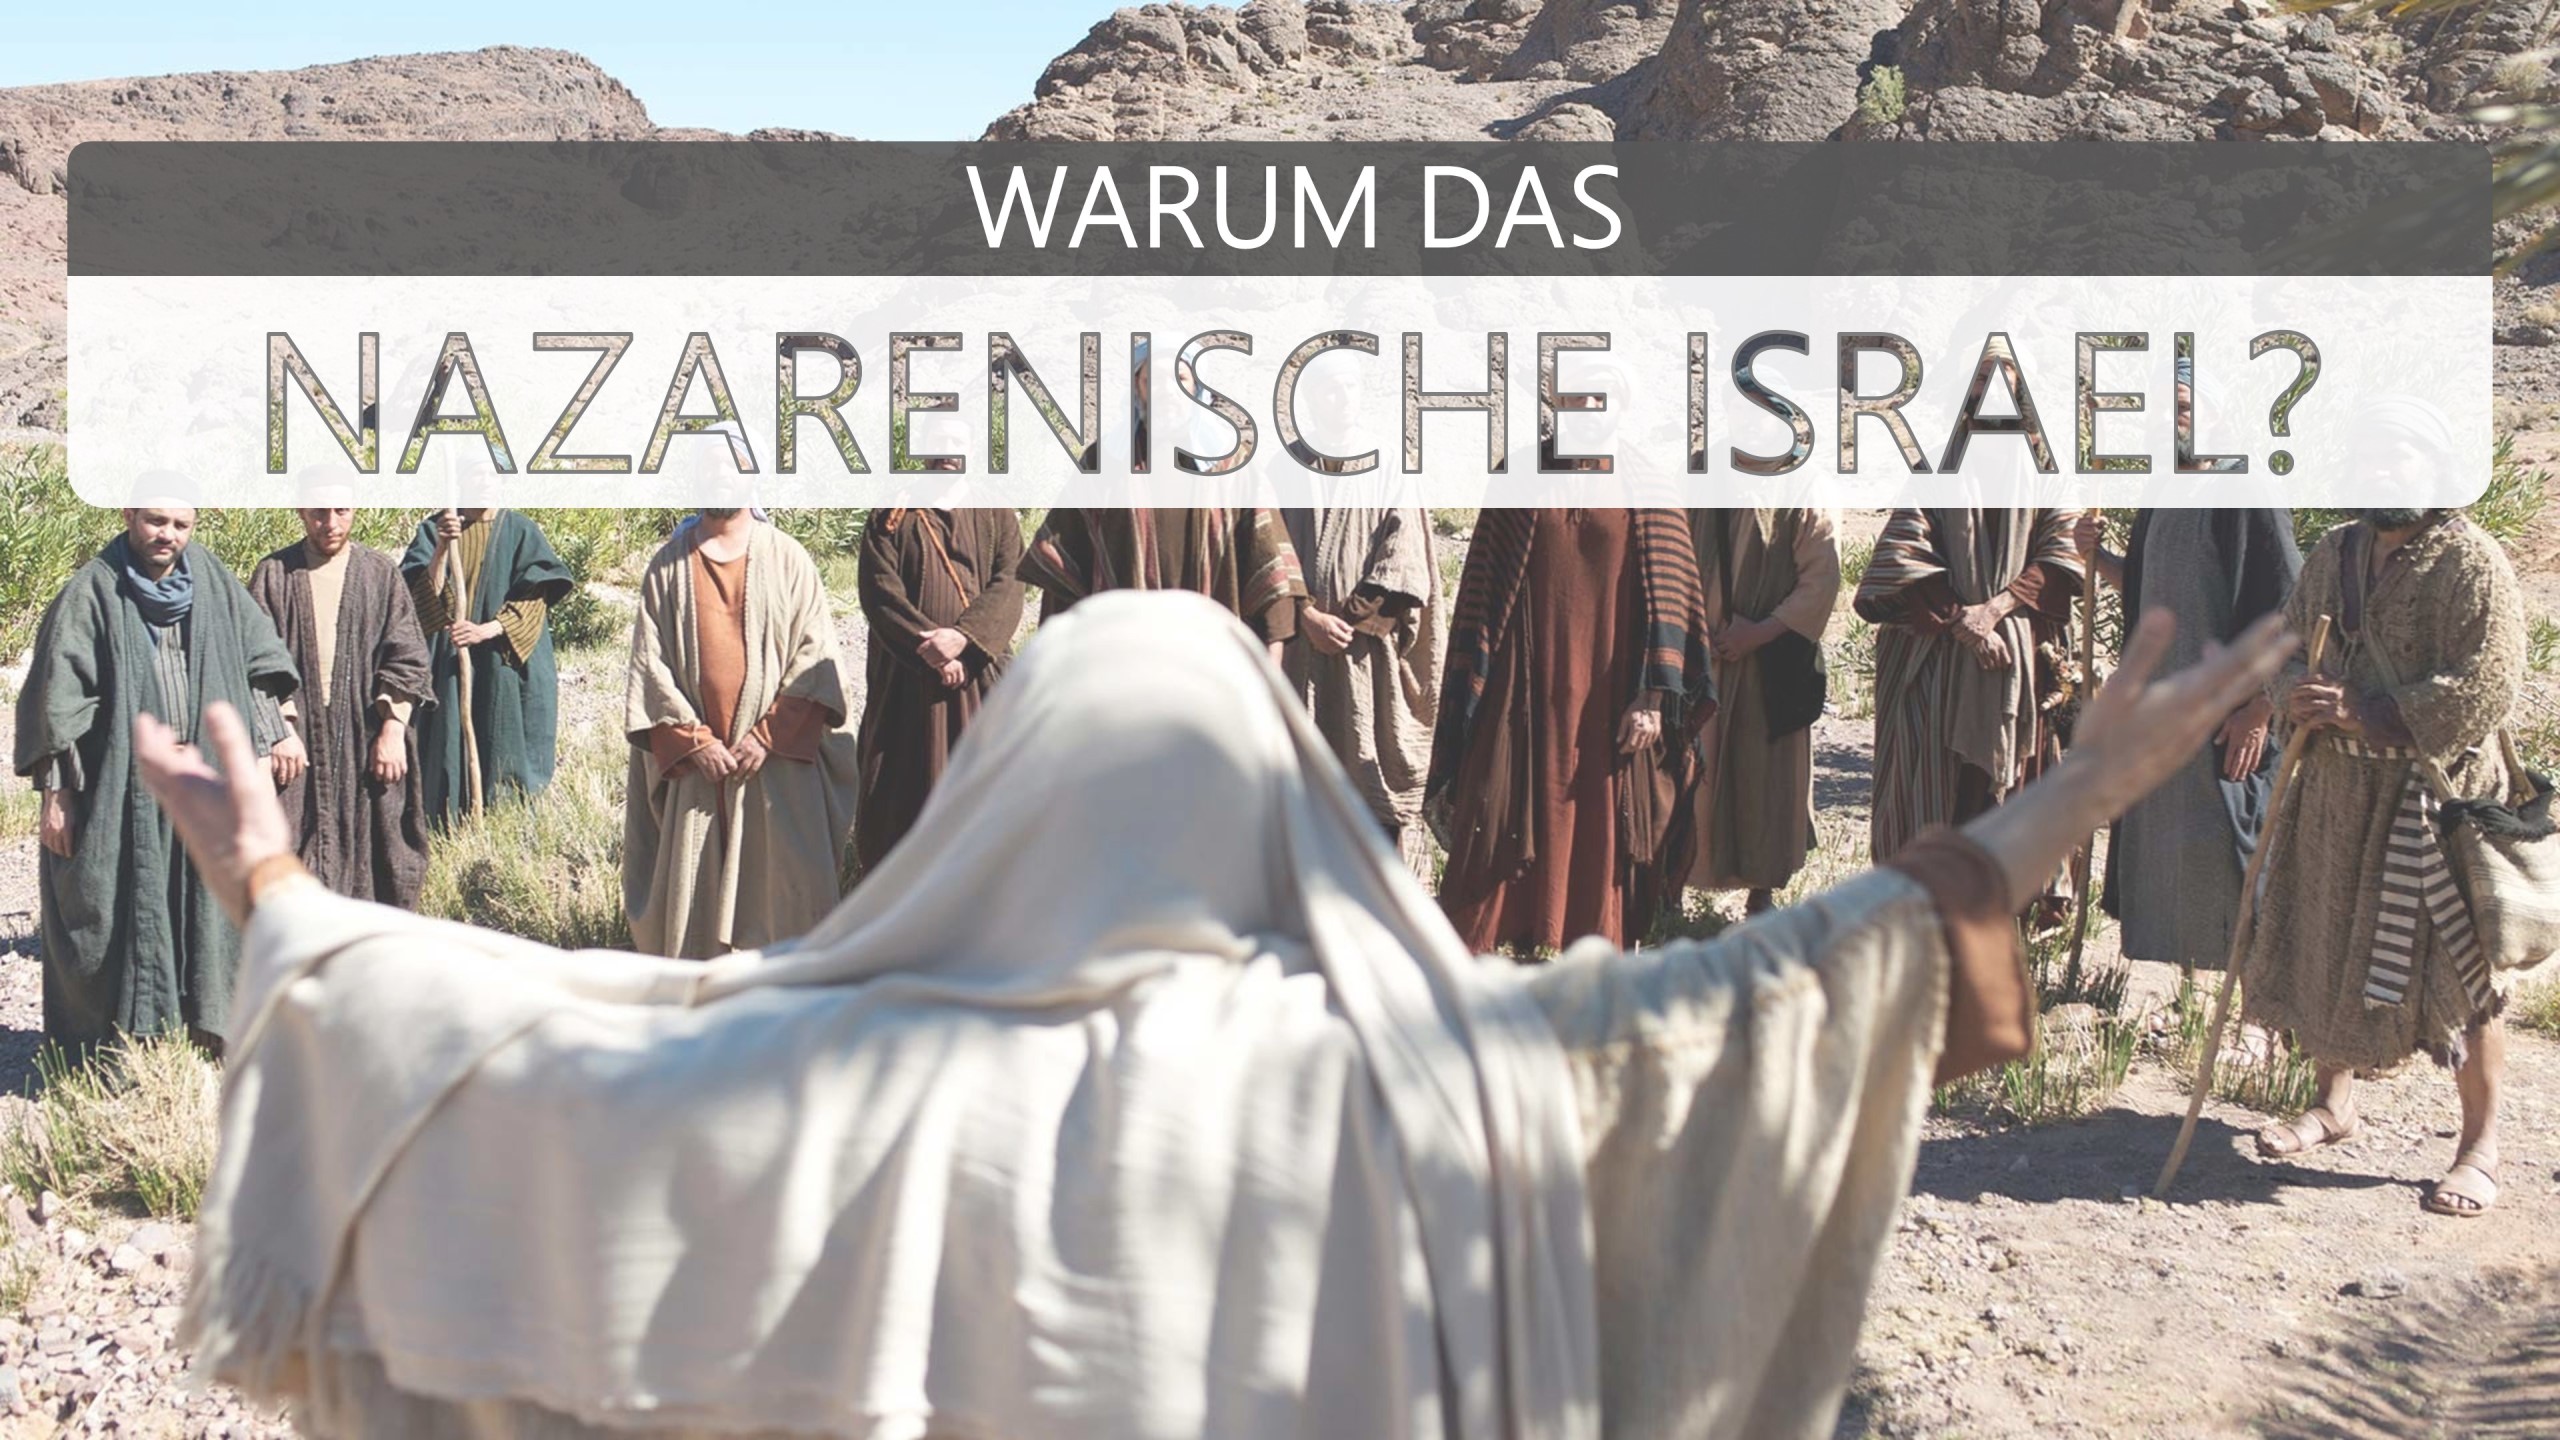 Warum das nazarenische Israel